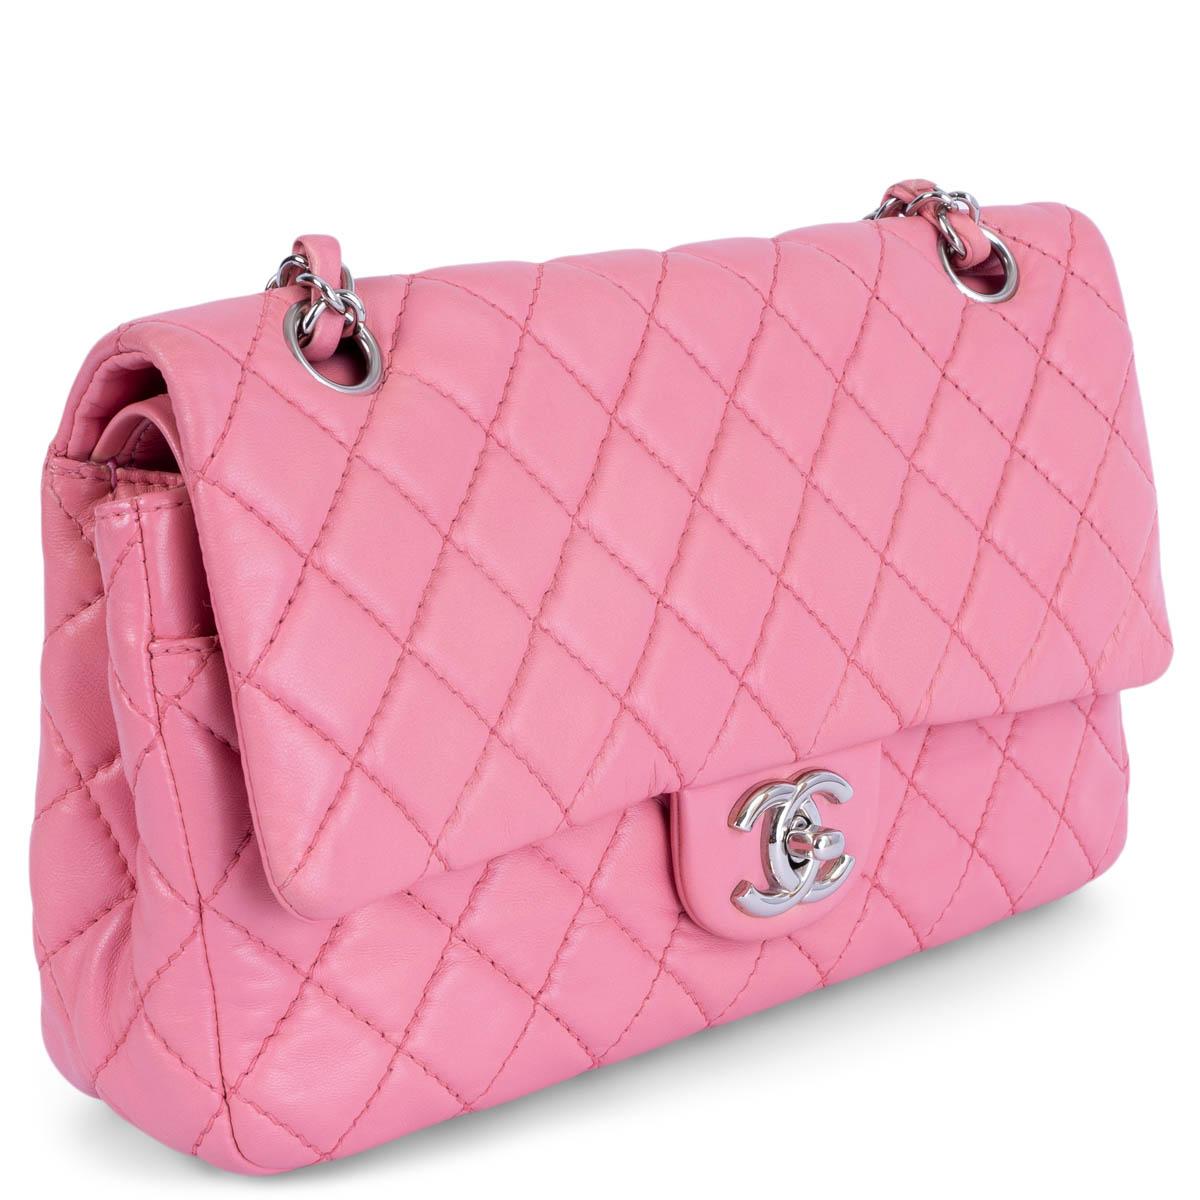 100% authentische Chanel Soft Classic Medium Timeless Double Flap Bag aus rosa Lammleder mit silberfarbener Hardware. Offene Tasche auf der Rückseite. Schließt mit klassischem CC-Drehverschluss auf der Vorderseite. Reißverschlusstasche auf der